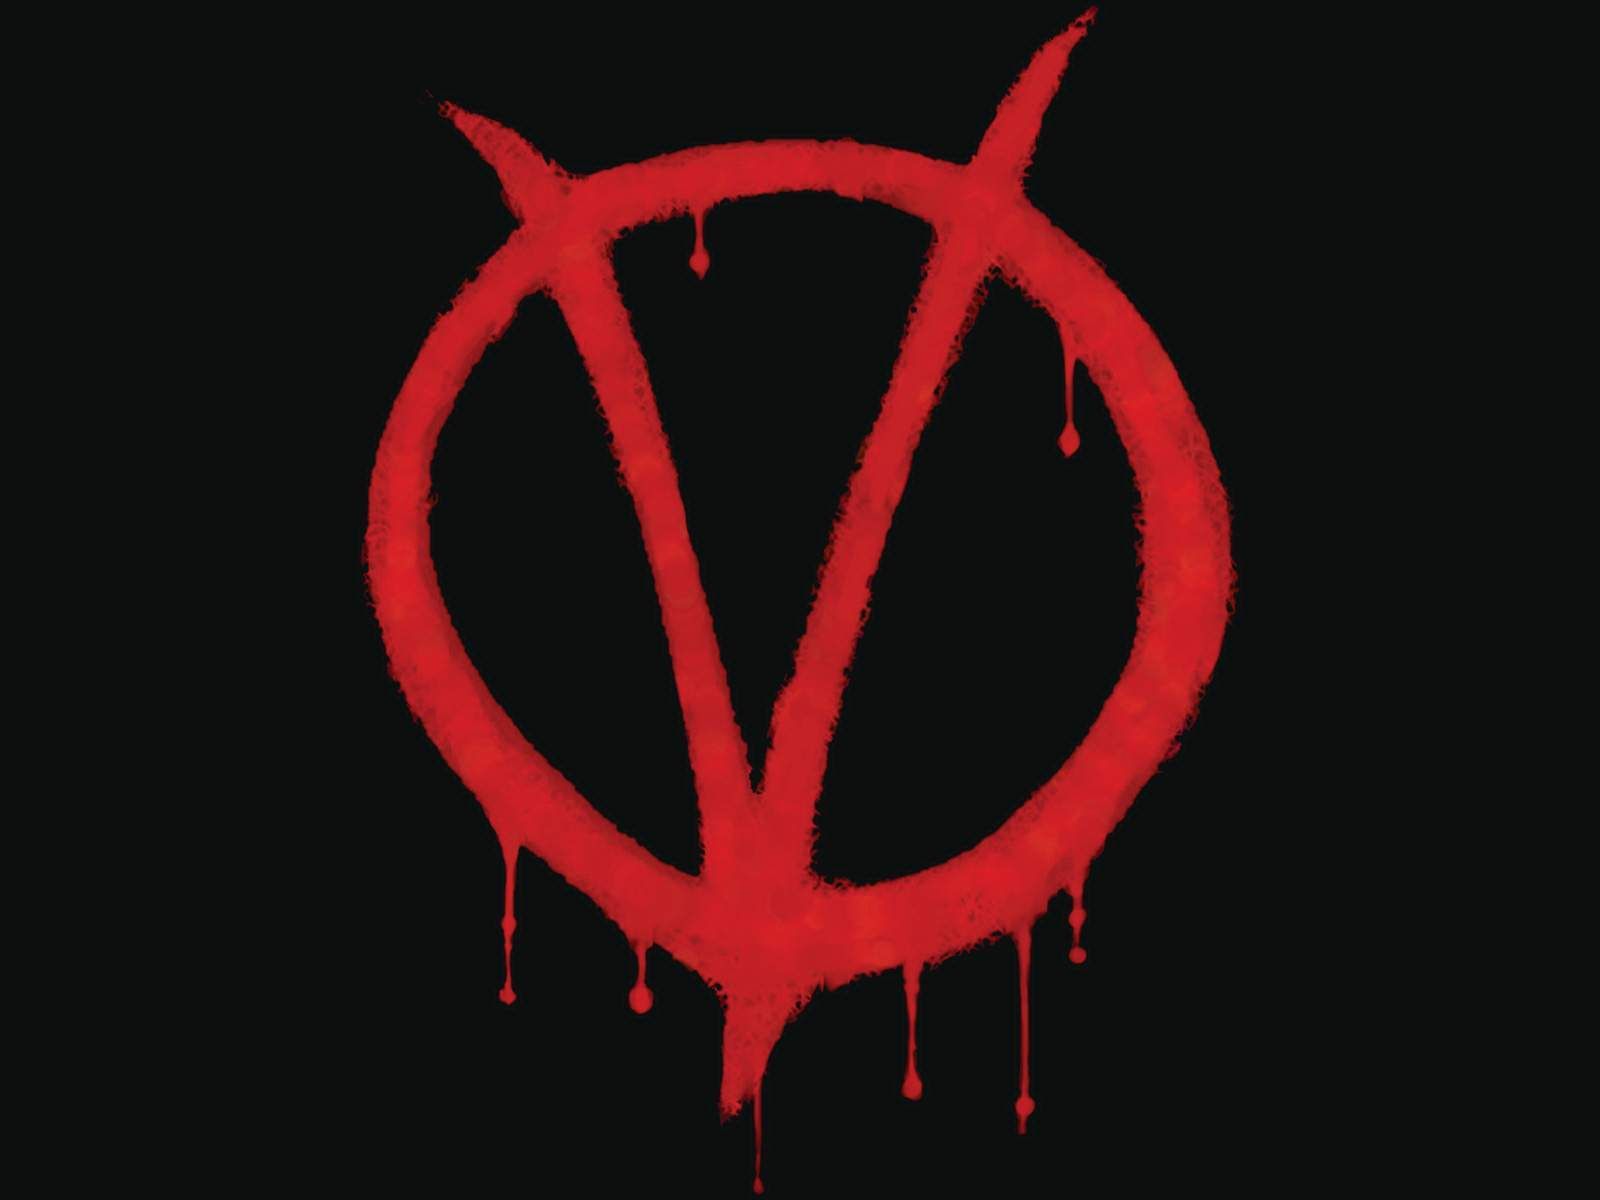 V for Vendetta Wallpaper - #10007890 (1280x1024) | Desktop ...